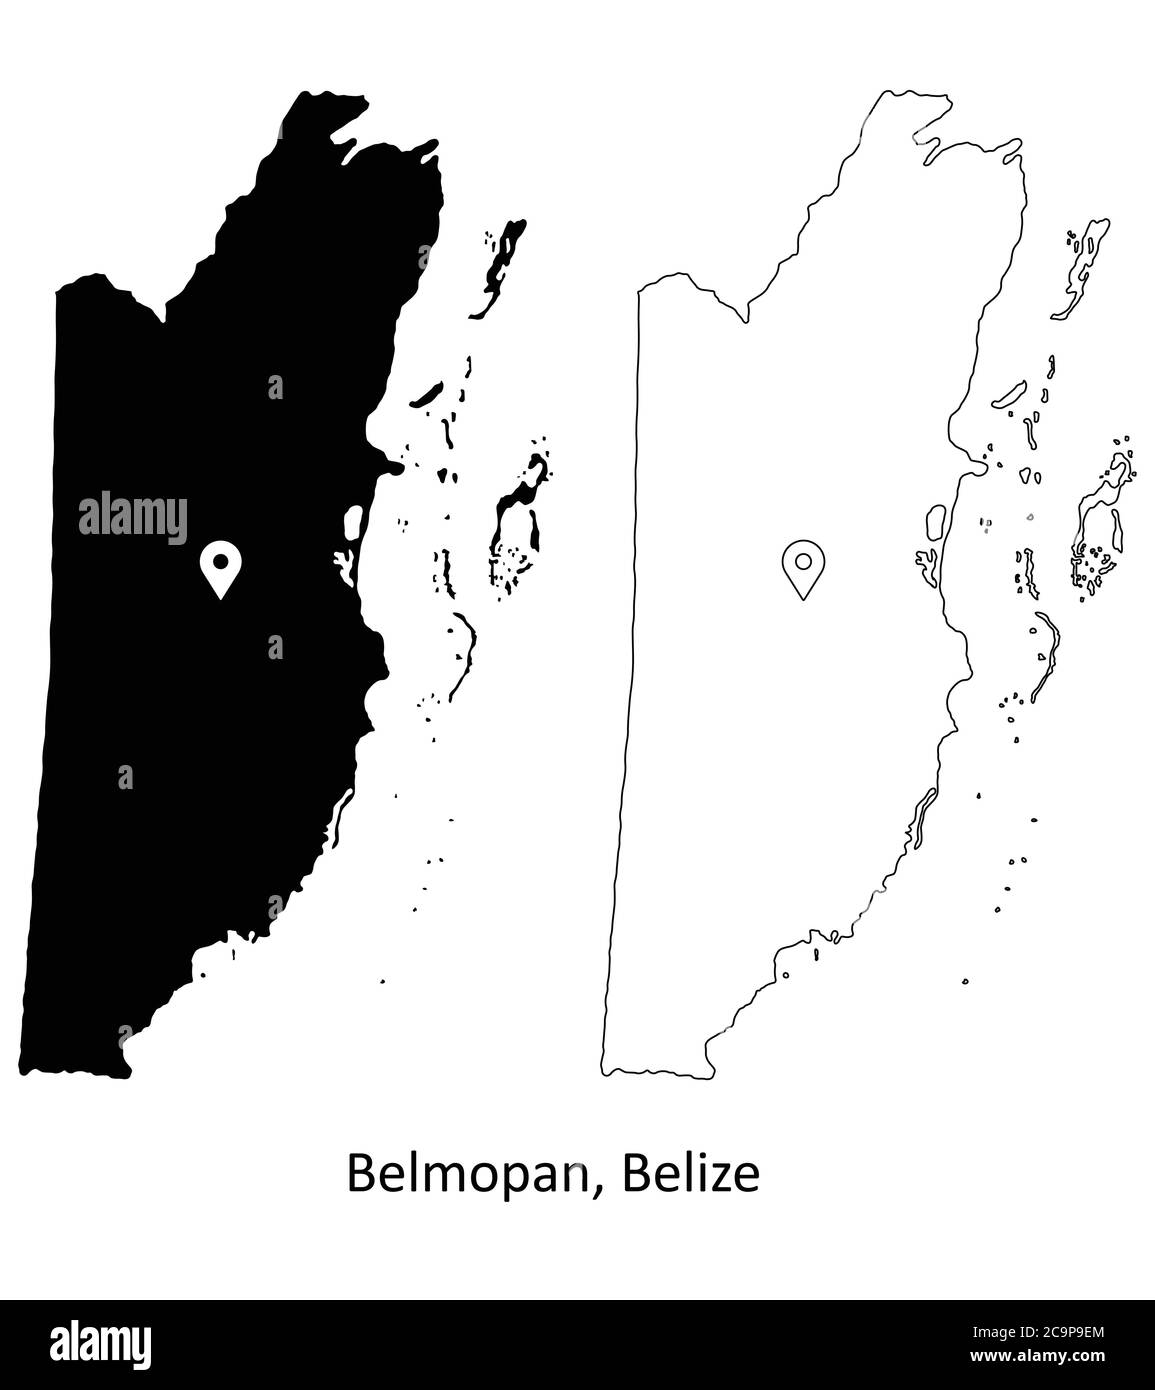 Belmopan Belize. Mappa dettagliata del Paese con il pin della posizione sulla città capitale. Silhouette nera e mappe di contorno isolate su sfondo bianco. Vettore EPS Illustrazione Vettoriale